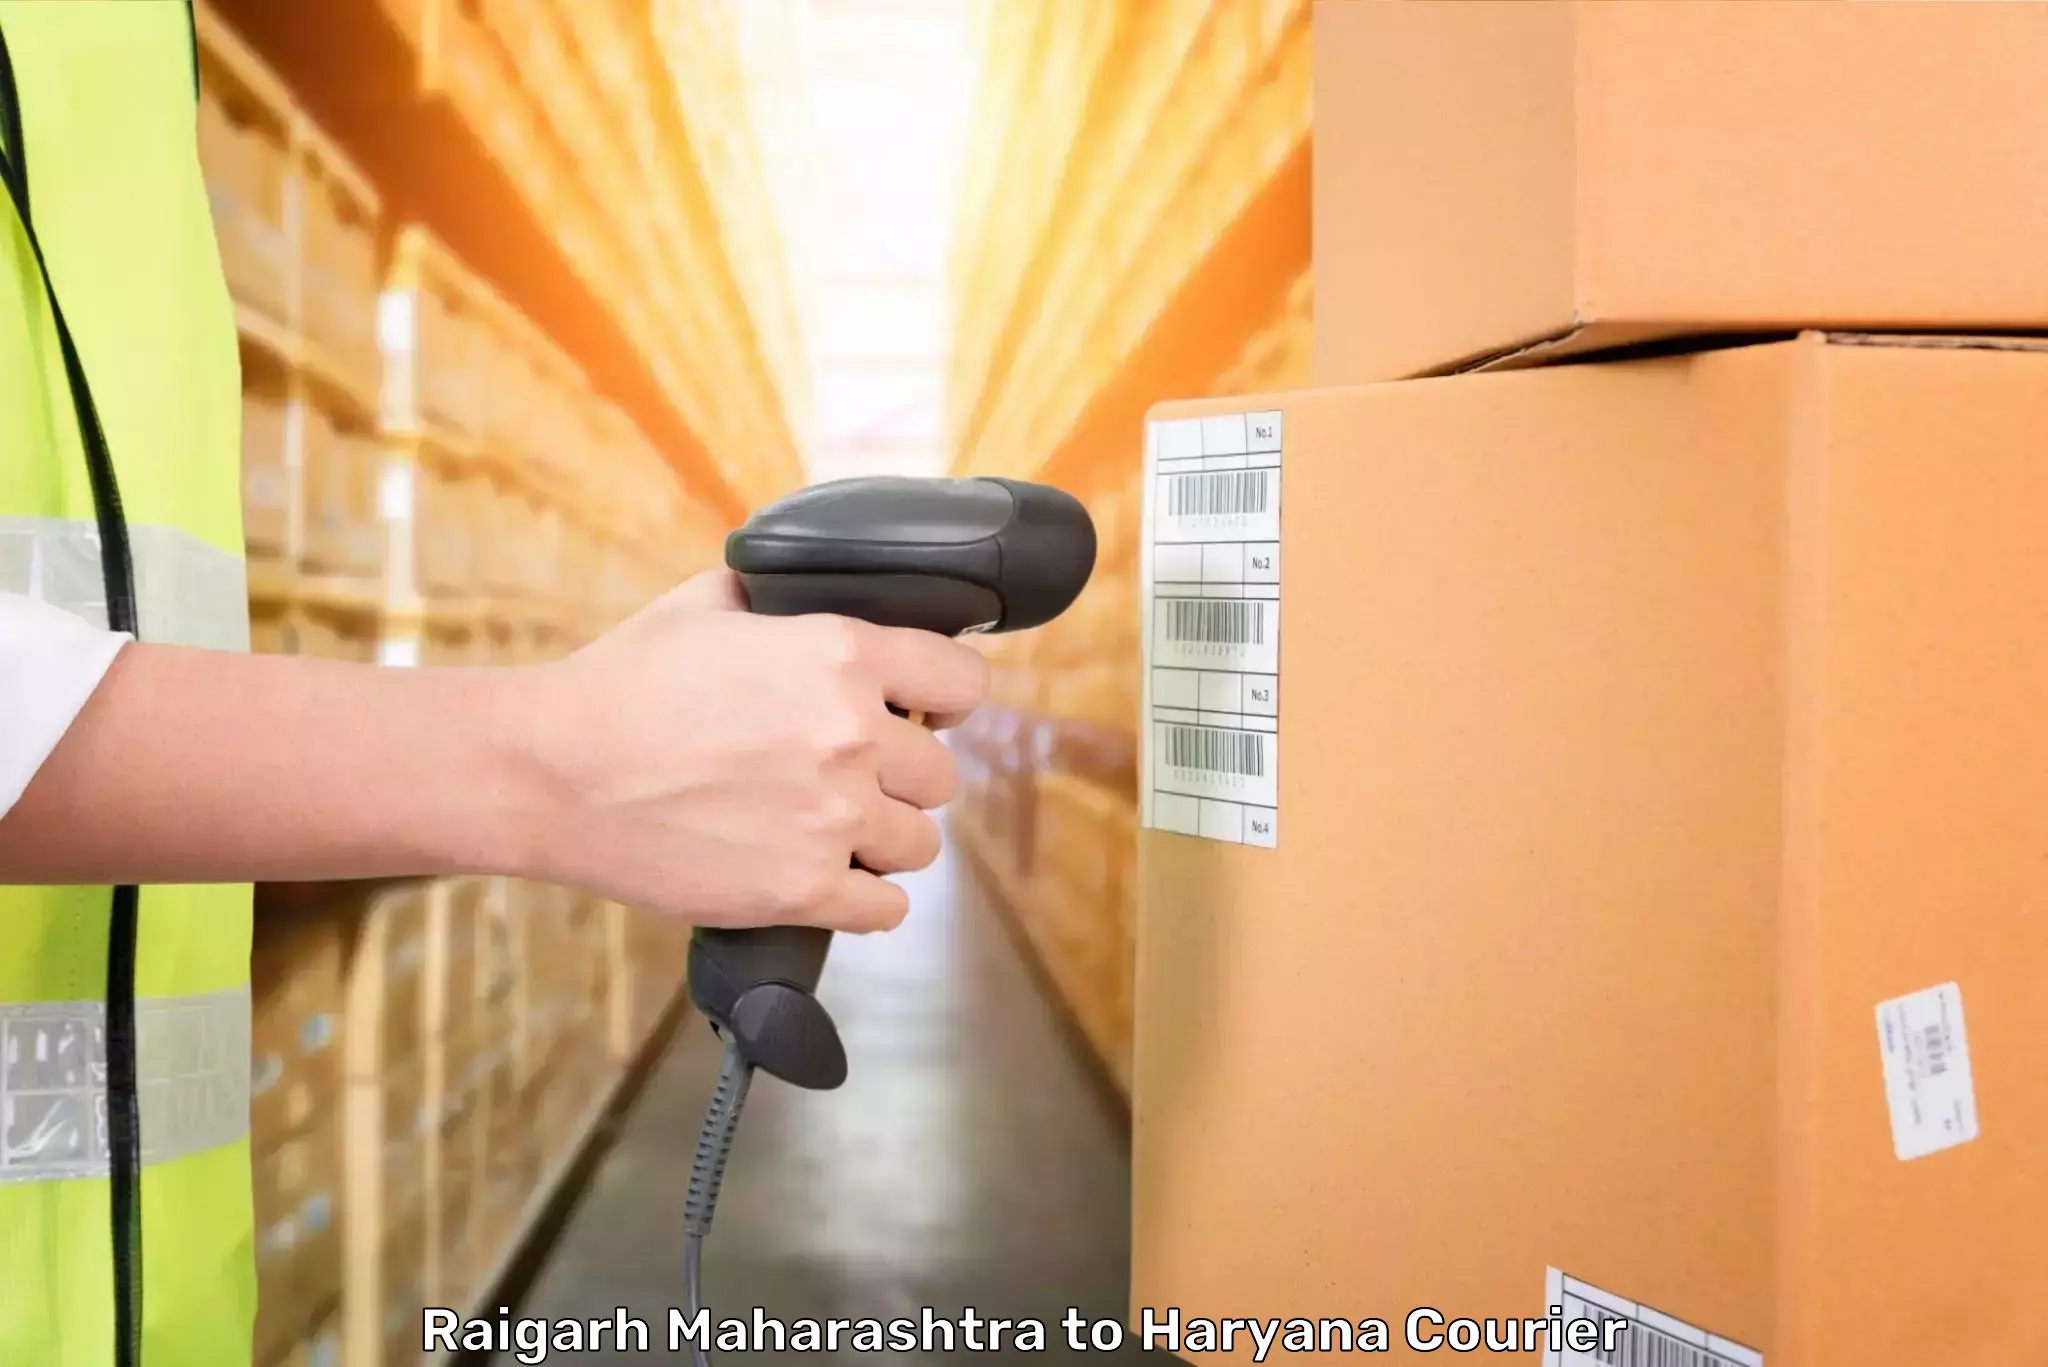 Luggage delivery app Raigarh Maharashtra to Haryana